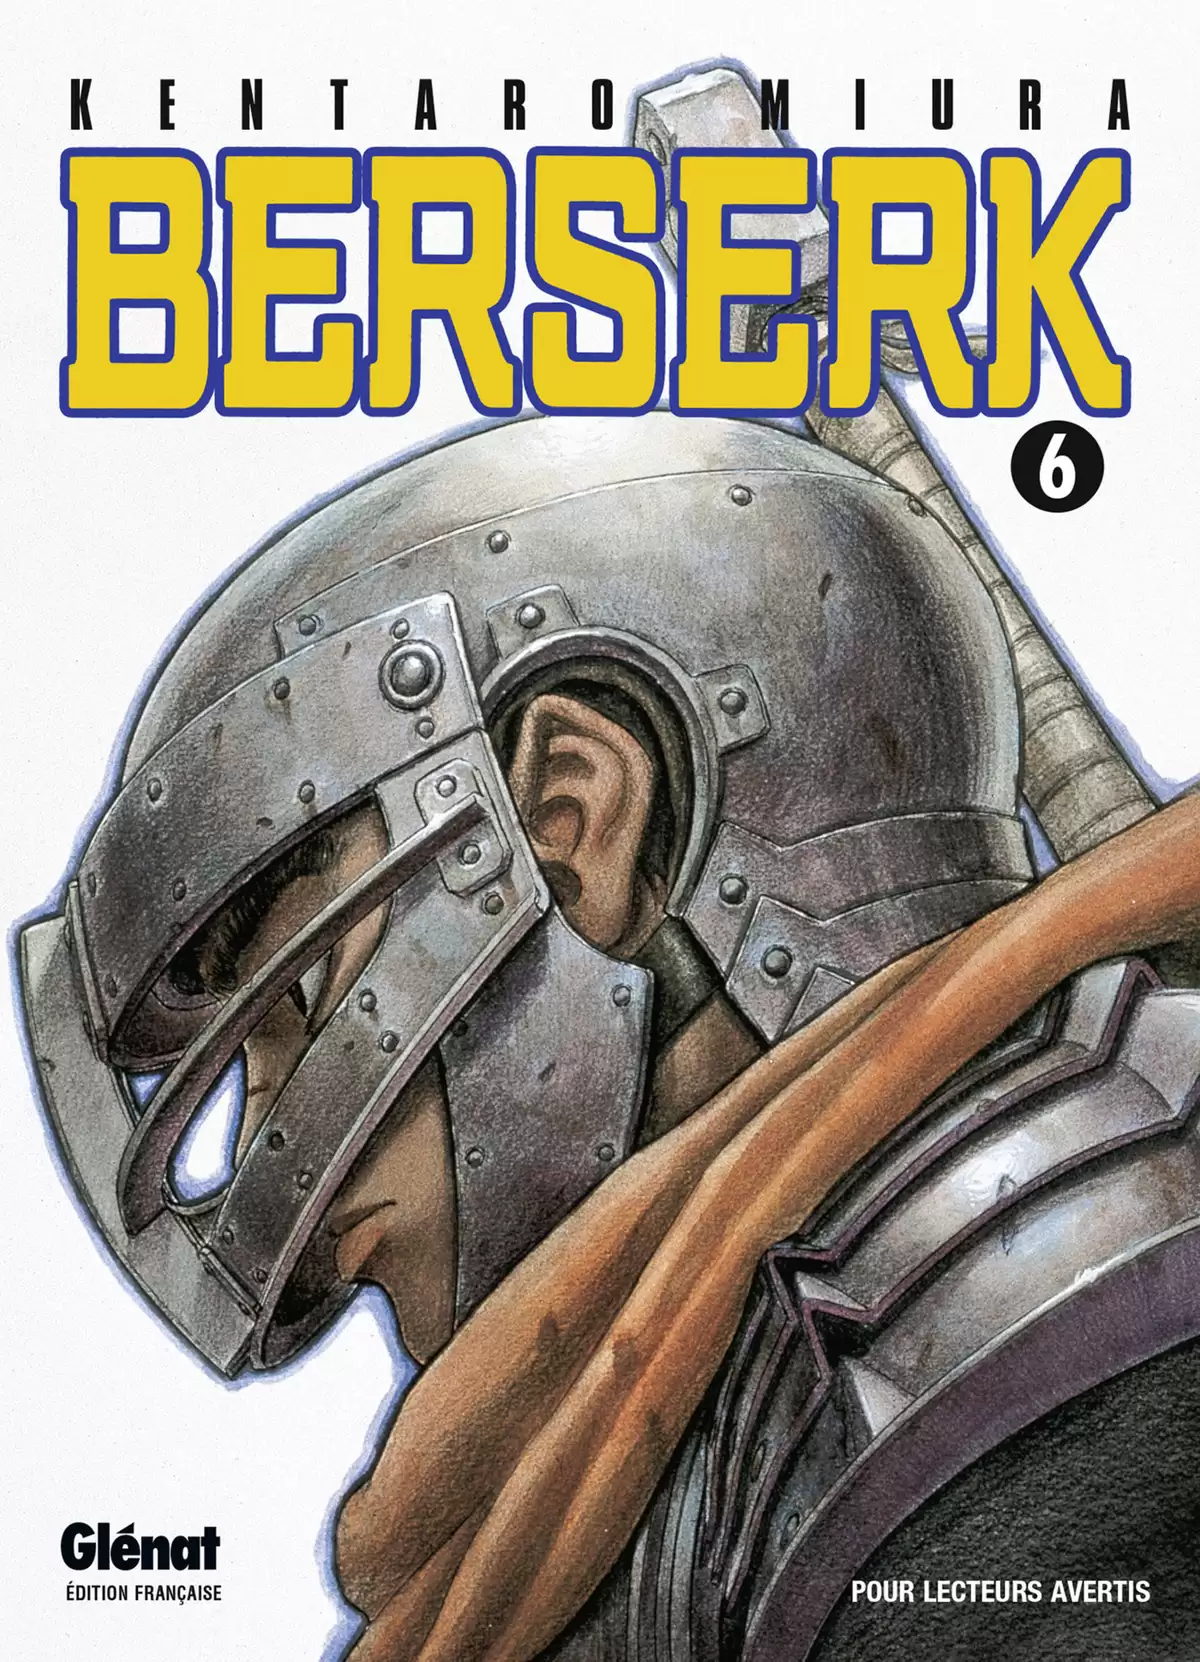 Berserk Volume 6 page 1